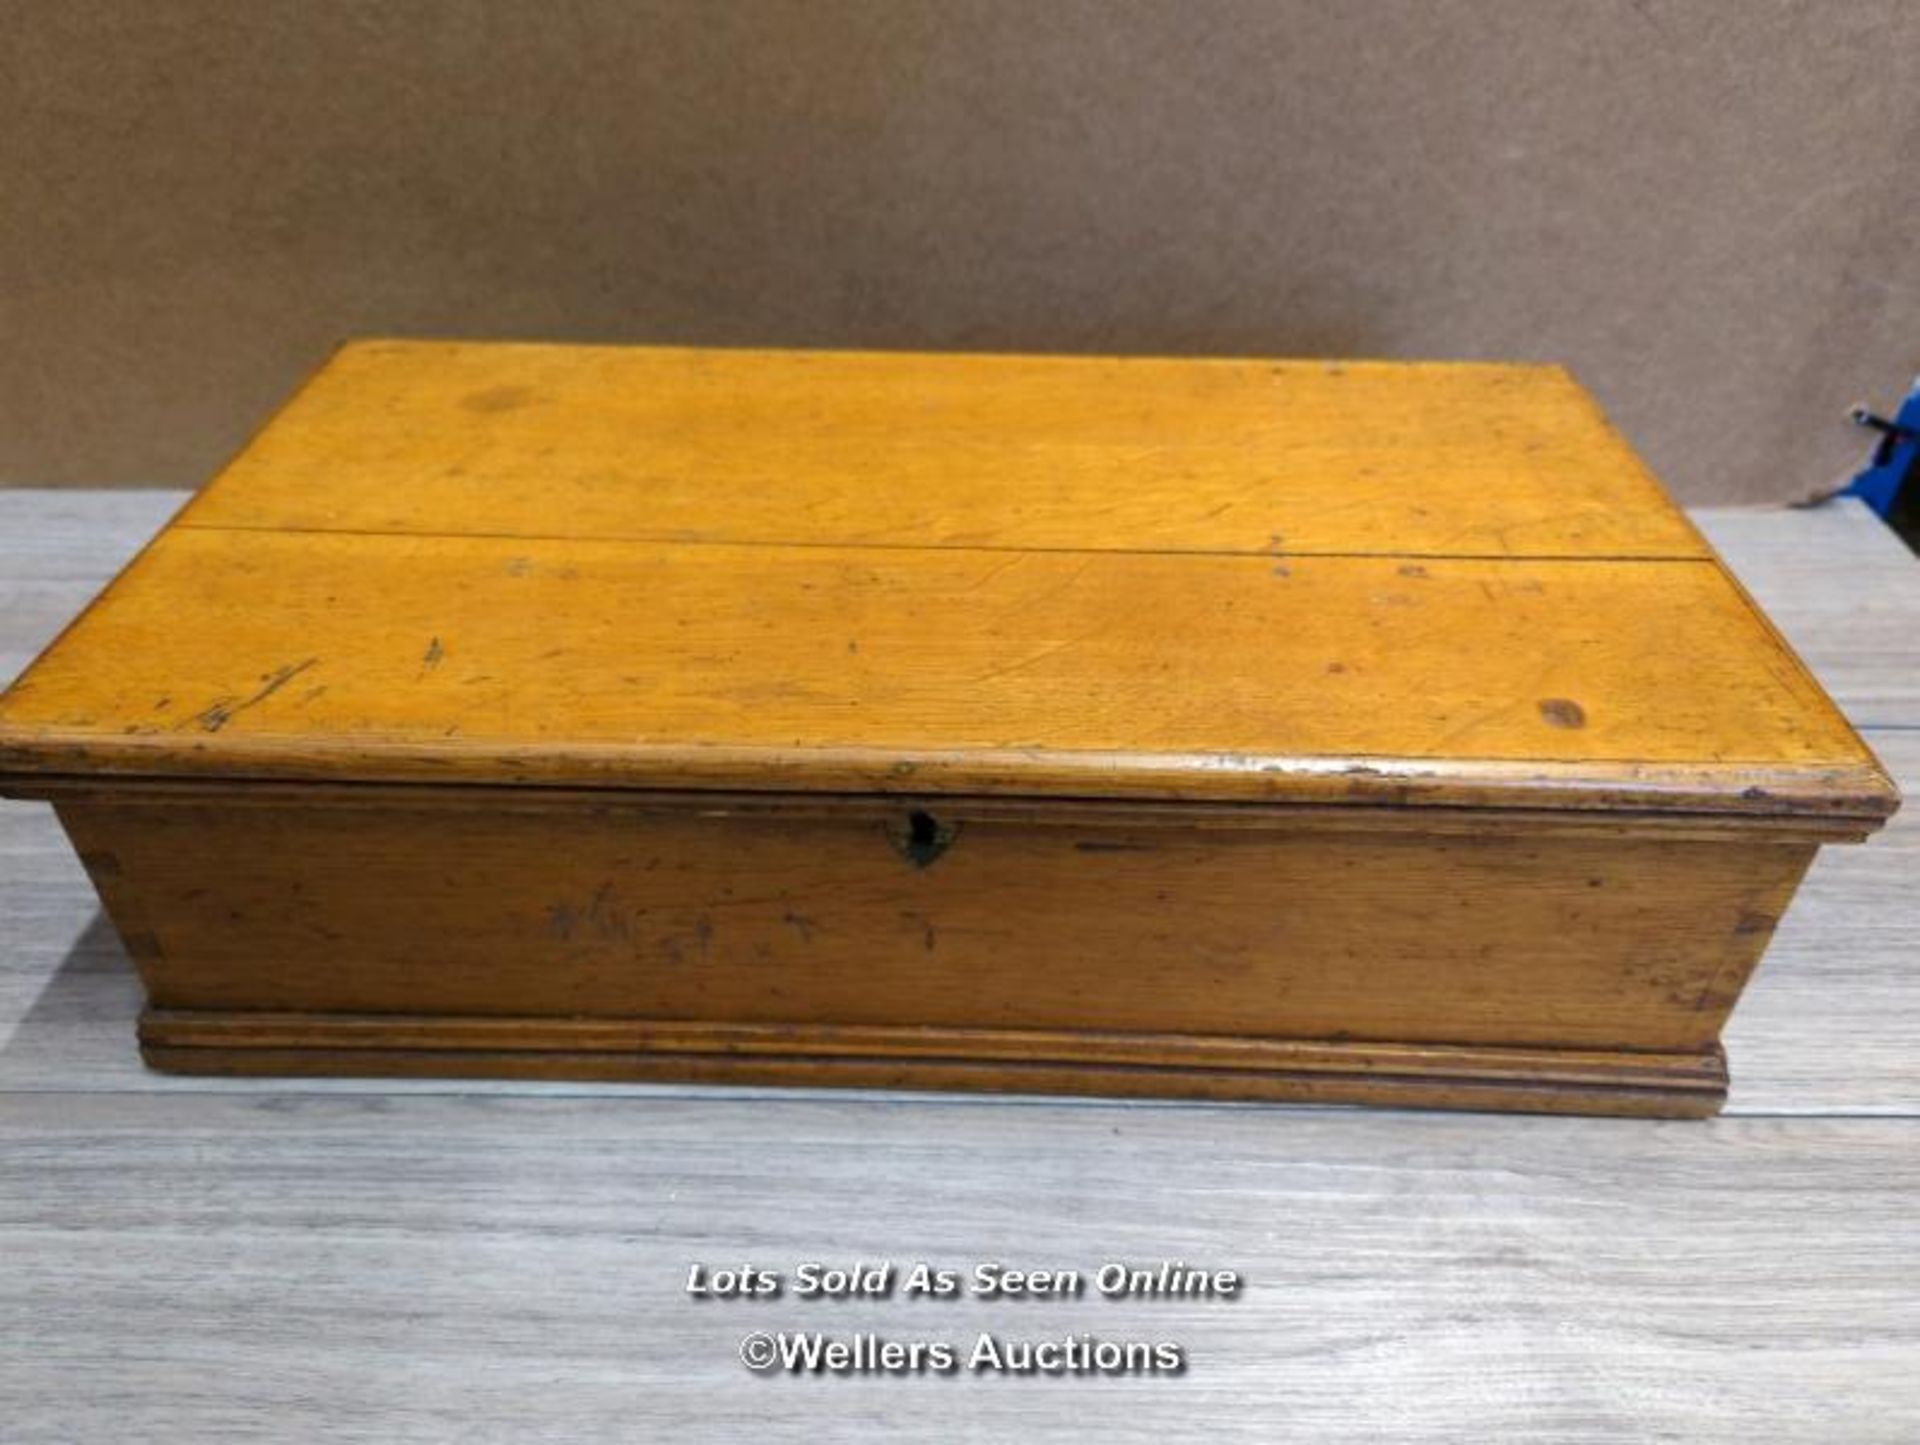 AN OAK CASE BOX, 47 X 13 X 25CM